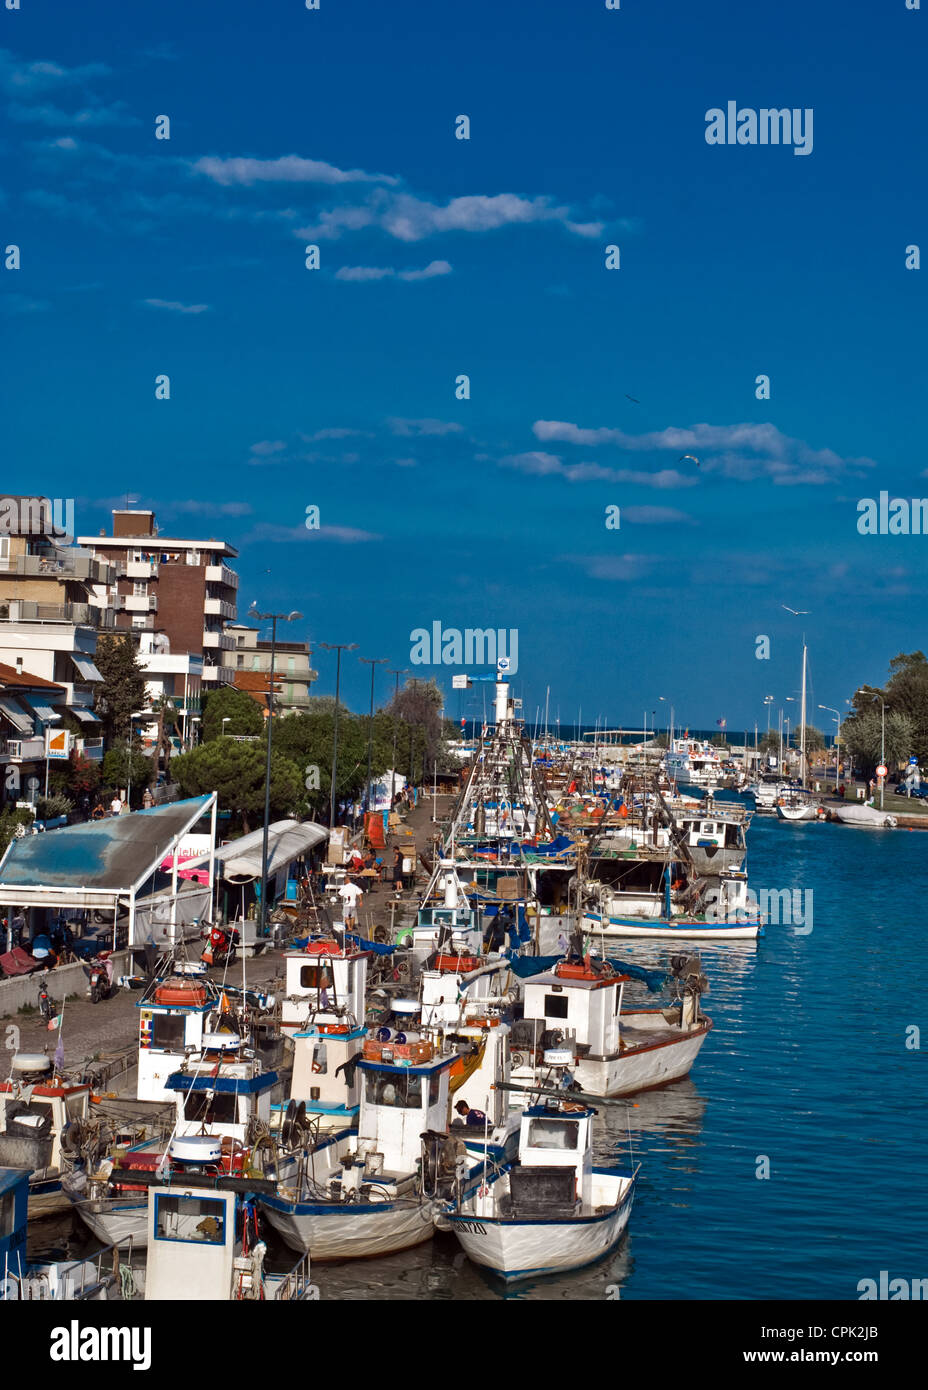 Bellissimo paesaggio italiano a Bellaria Igea Marina Rimini dove  fishinboats sono ancorata in un porto che si affacciano sull'Adriatico Foto  stock - Alamy